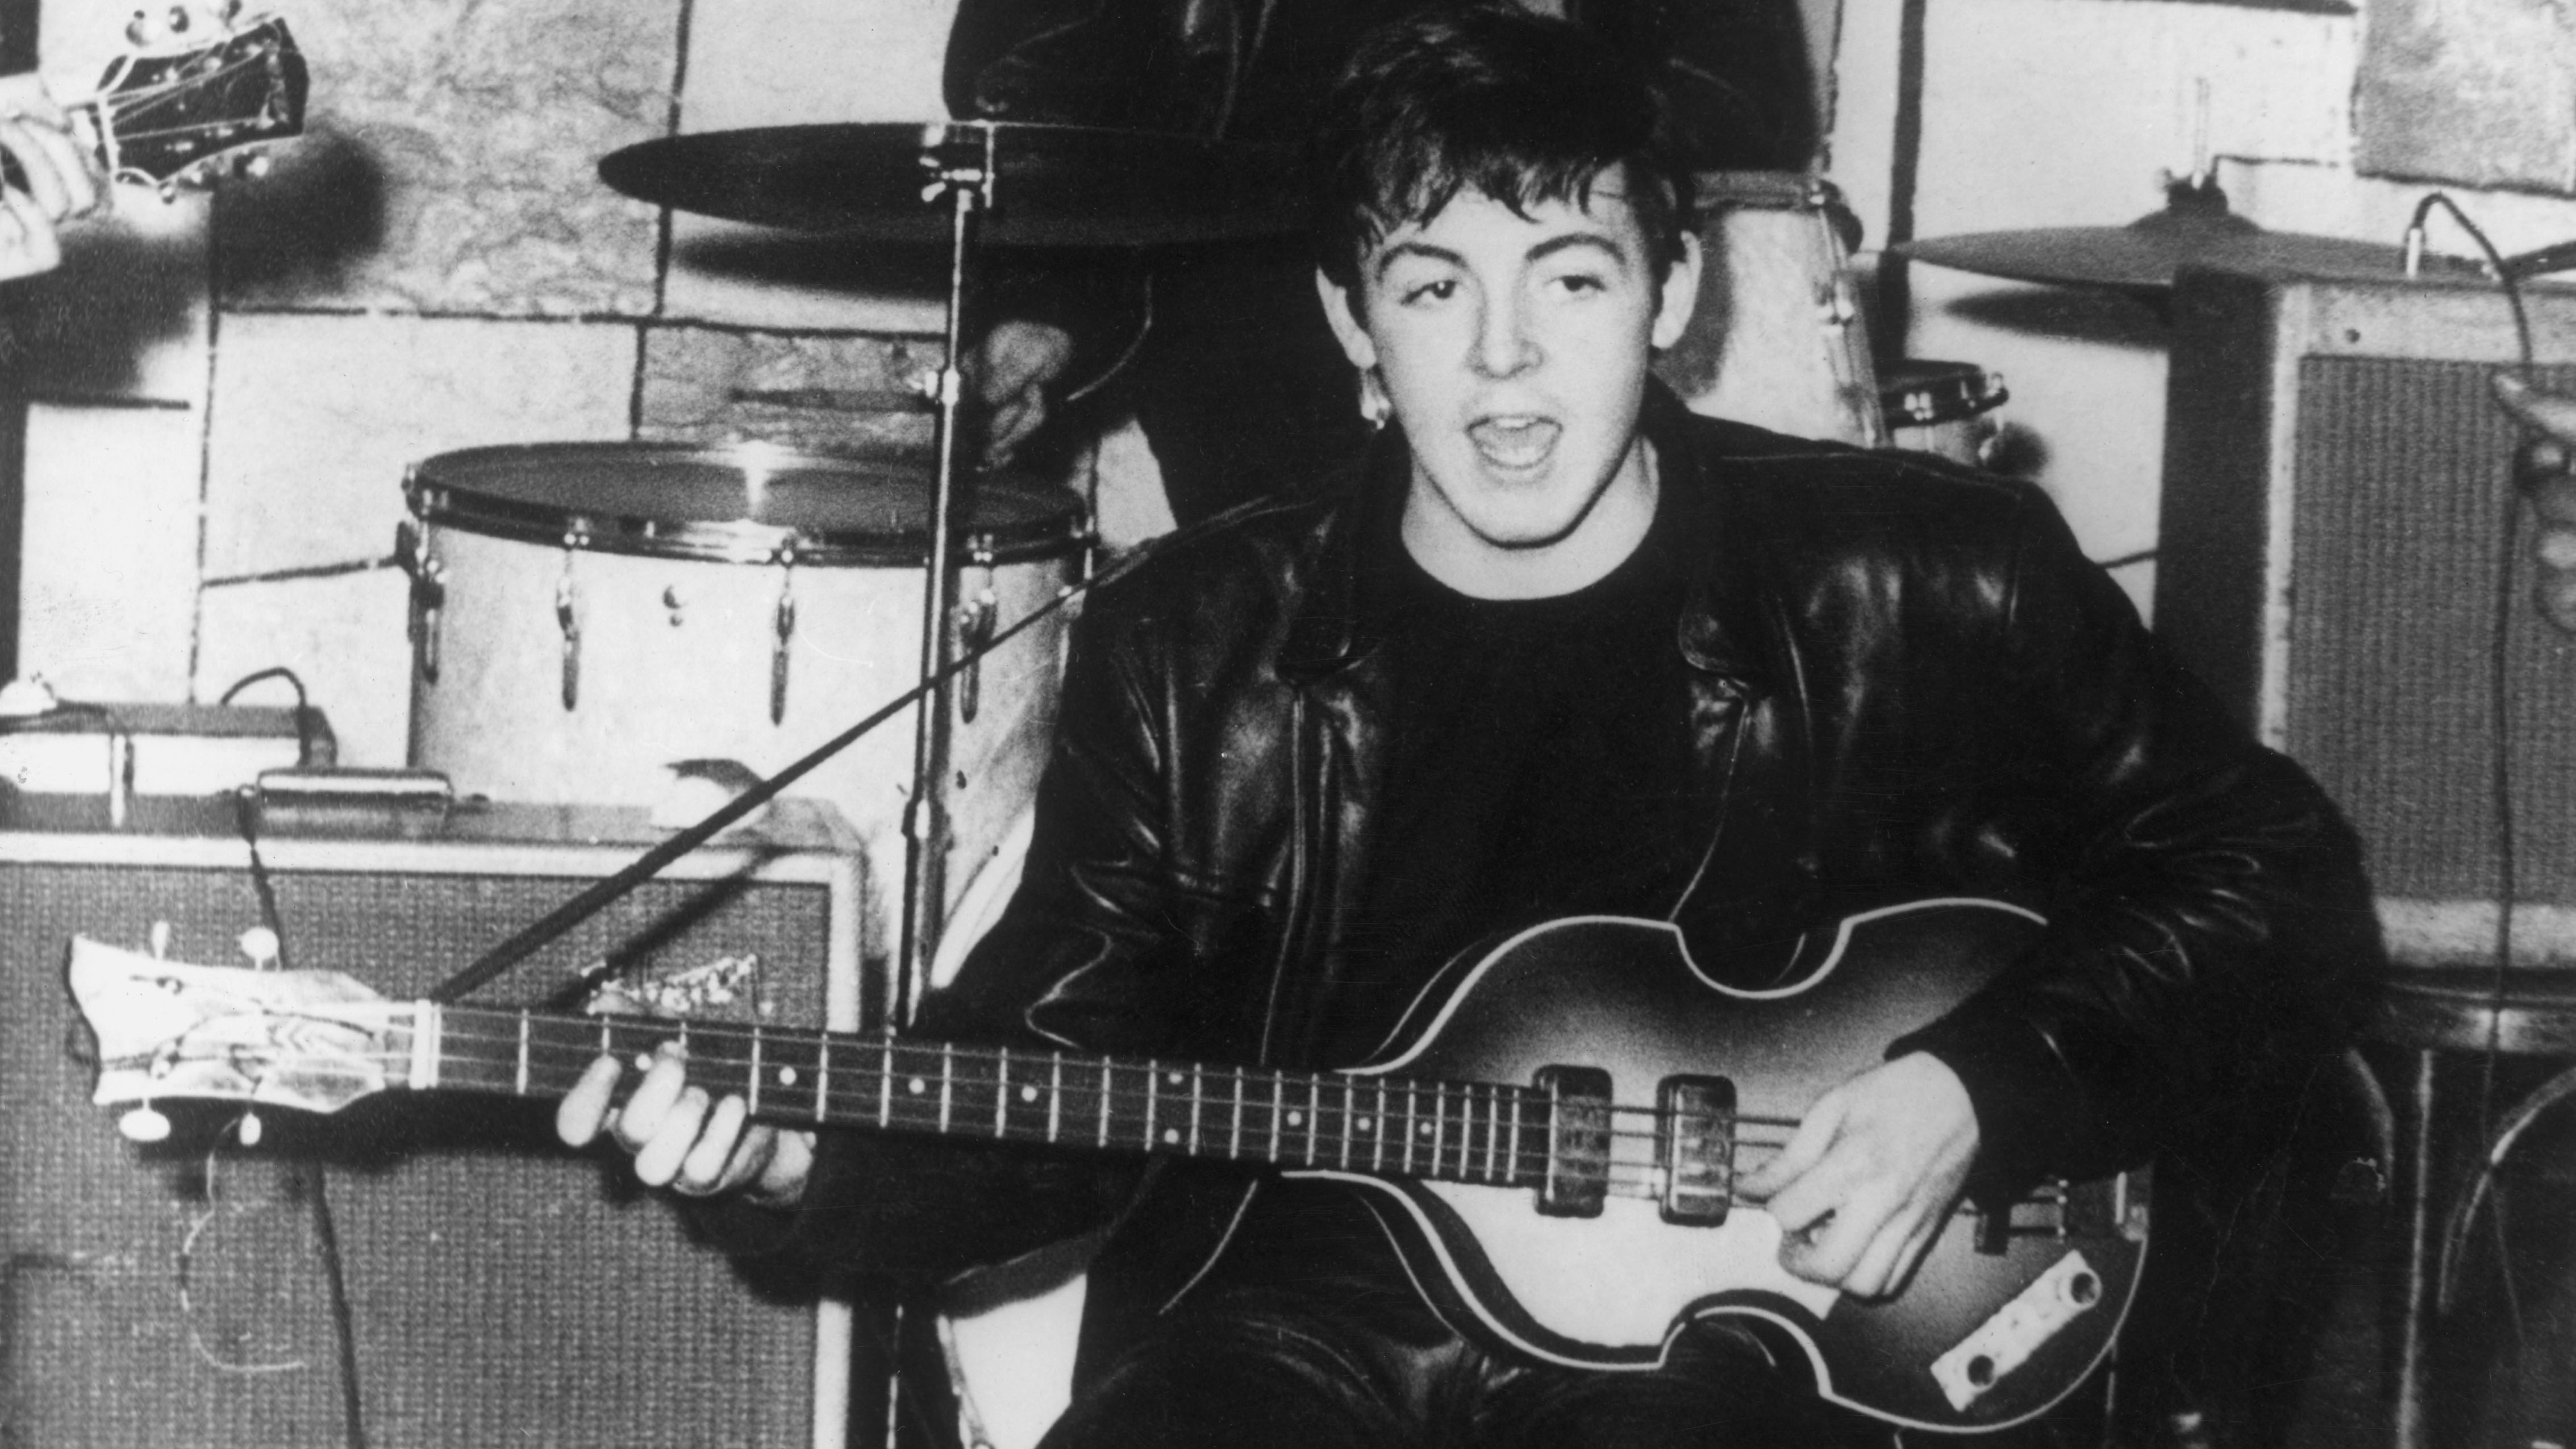 Paul McCartney's Guitars, Basses, Pedalboard & Amps